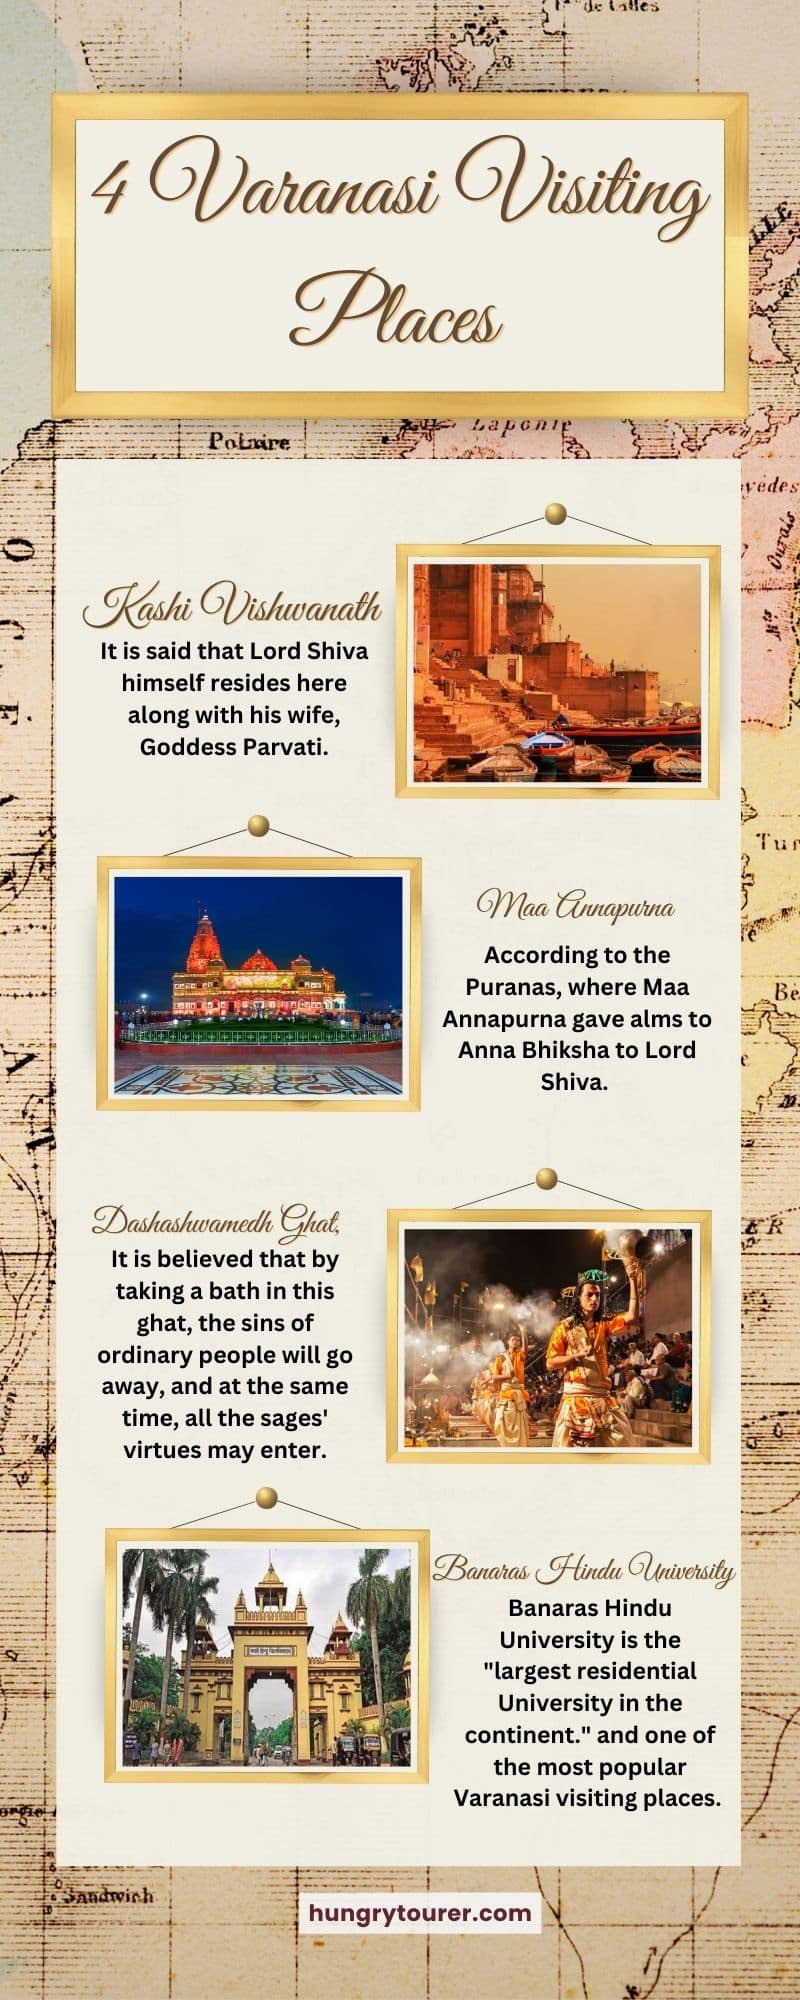 4 Varanasi Visiting Places